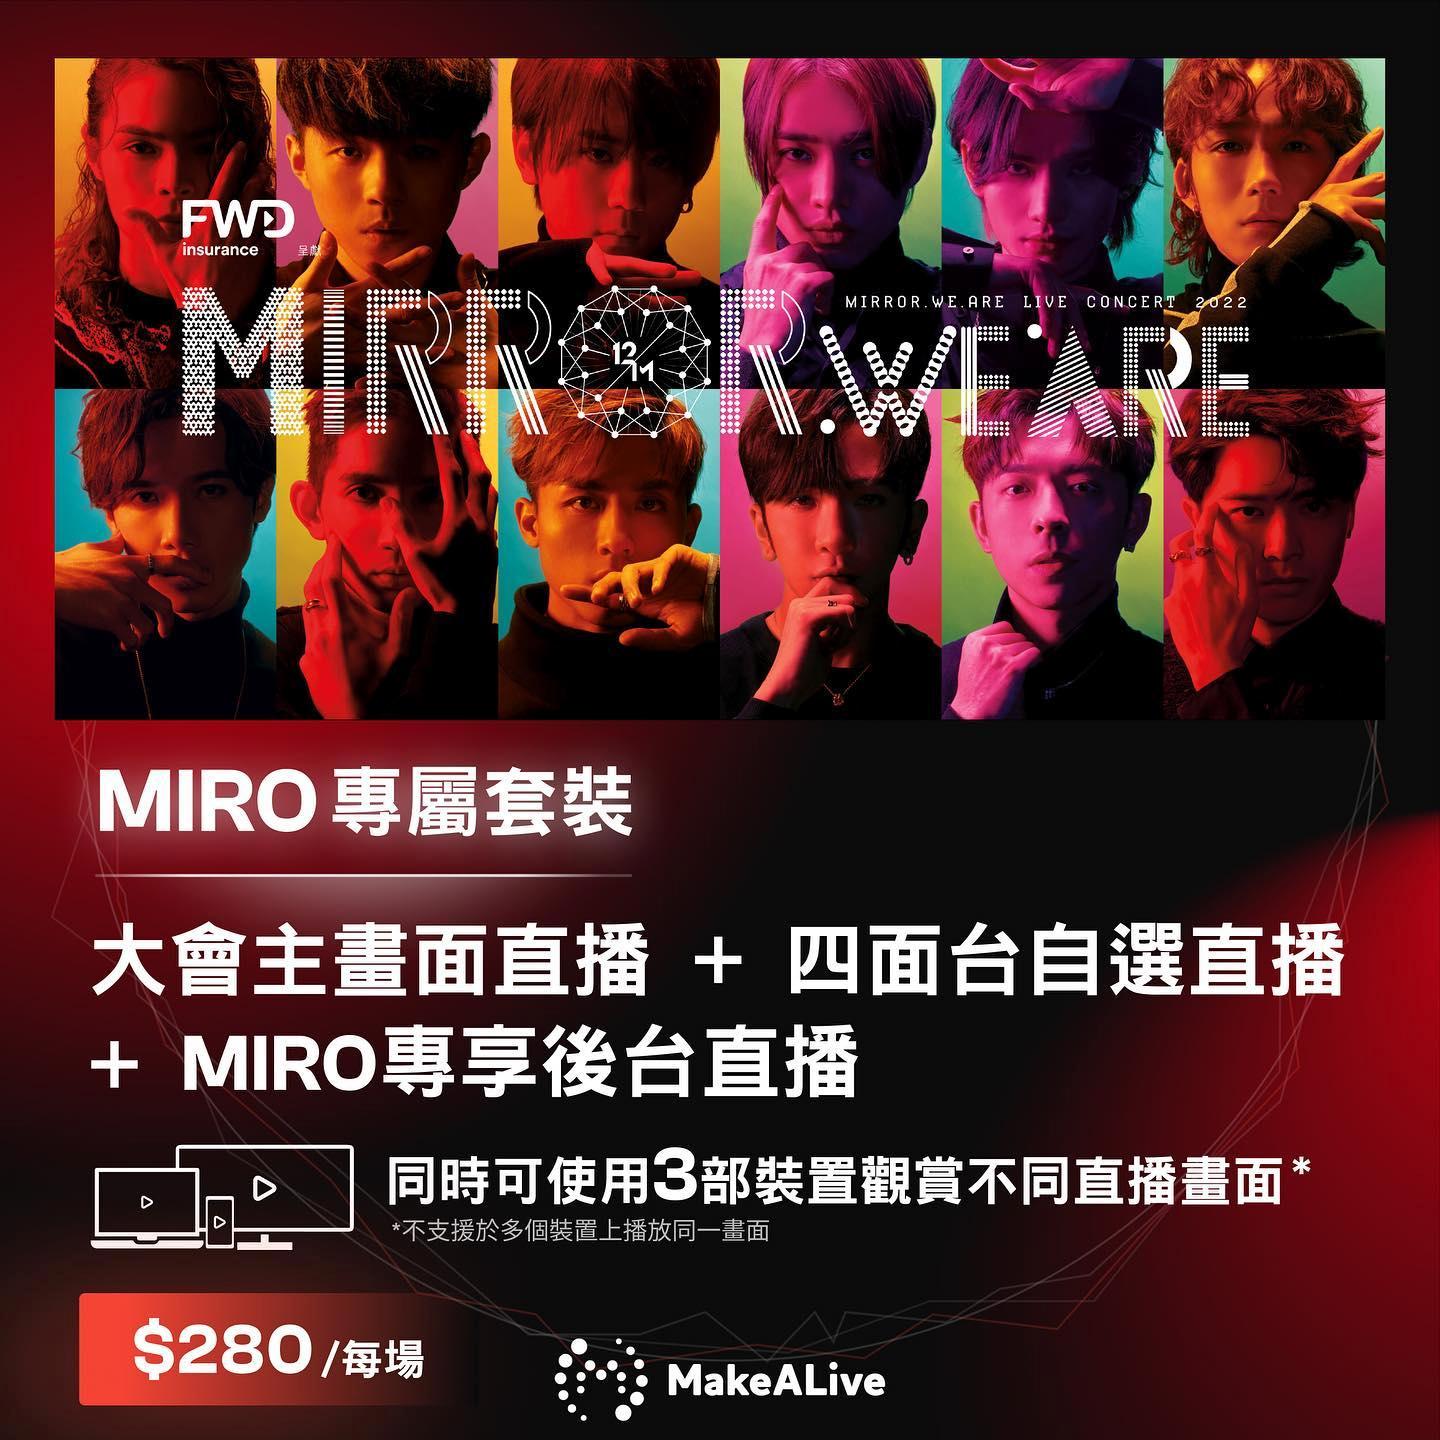 MIRO專屬套裝，則是每場280元，只限MIRO購買，包括大會主畫面直播、四面台自選直播及MIRO專享後台直播，同時可使用3部裝置觀賞不同直播畫面。（fb圖片）